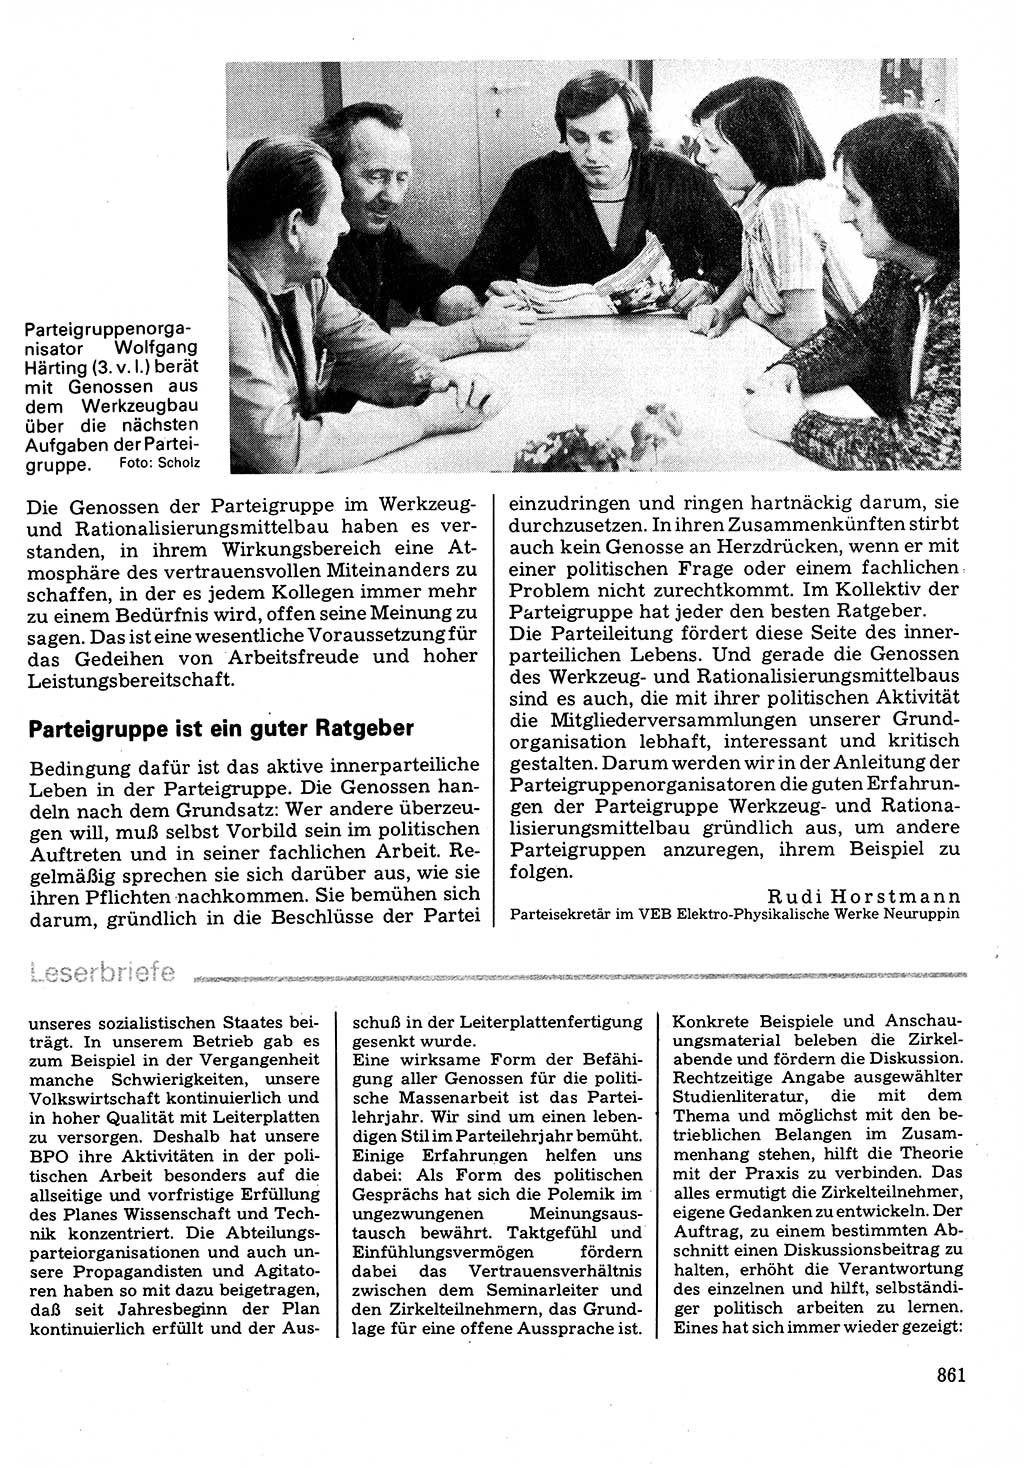 Neuer Weg (NW), Organ des Zentralkomitees (ZK) der SED (Sozialistische Einheitspartei Deutschlands) für Fragen des Parteilebens, 32. Jahrgang [Deutsche Demokratische Republik (DDR)] 1977, Seite 861 (NW ZK SED DDR 1977, S. 861)